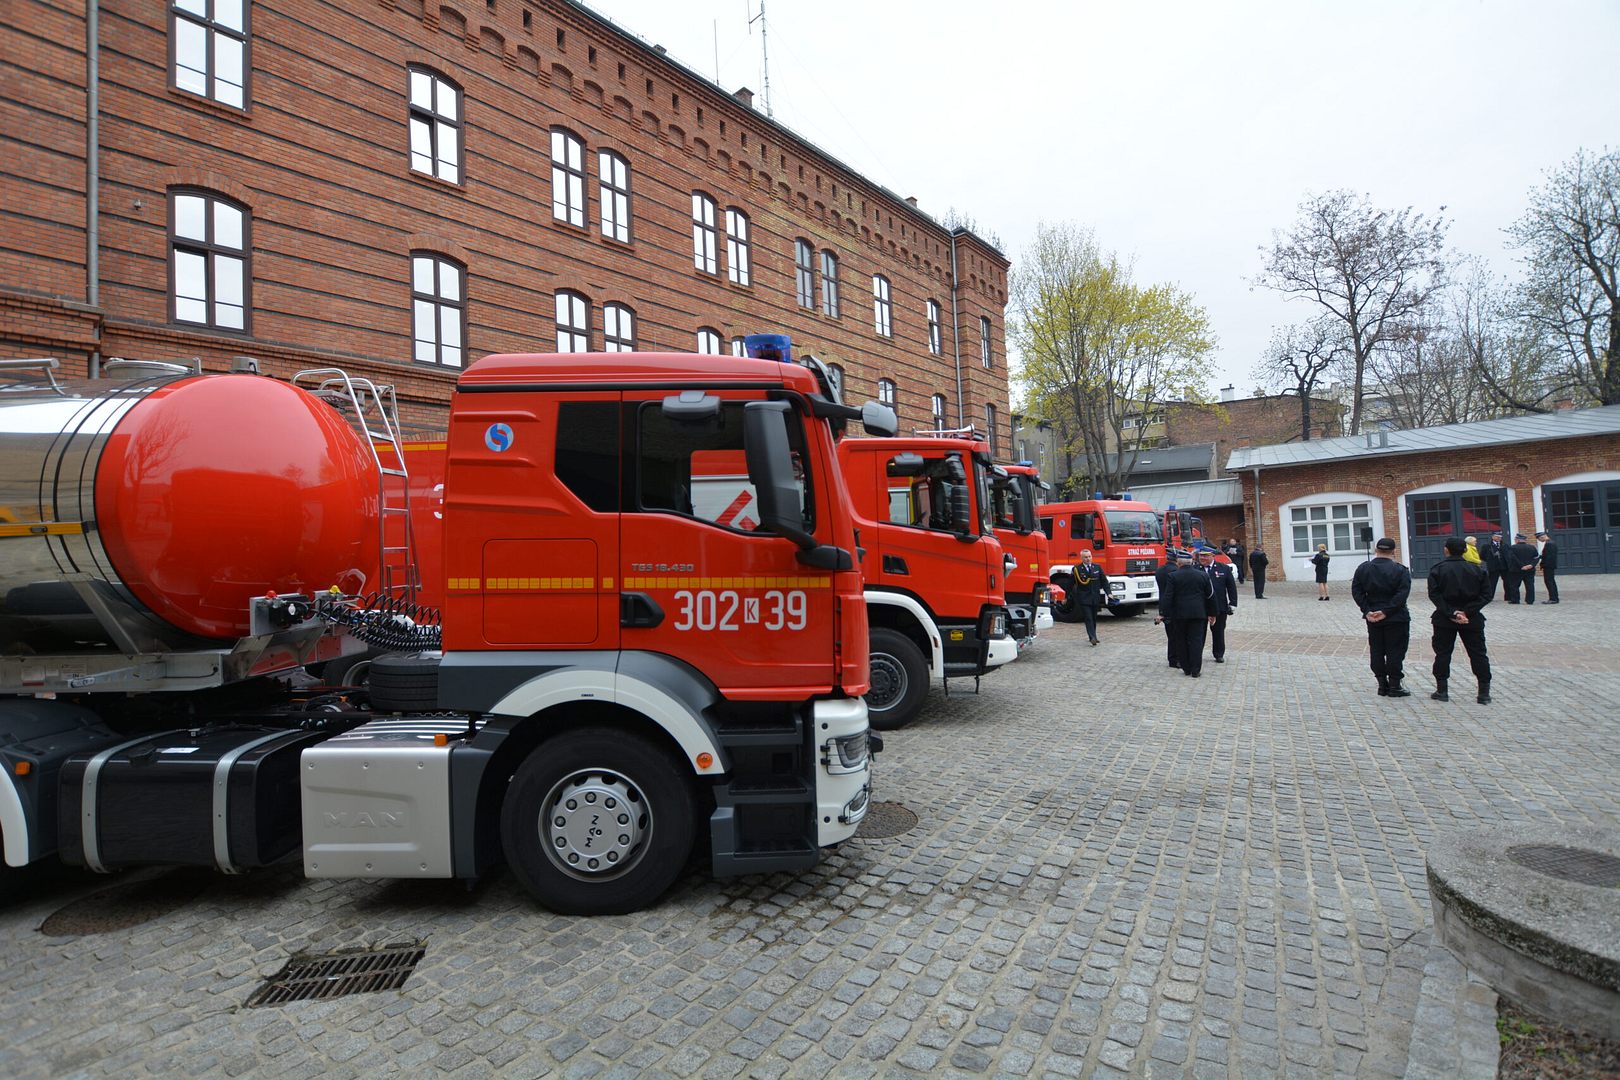 Strażacy z Kleczy dostaną fundusze na nowy wóz bojowy